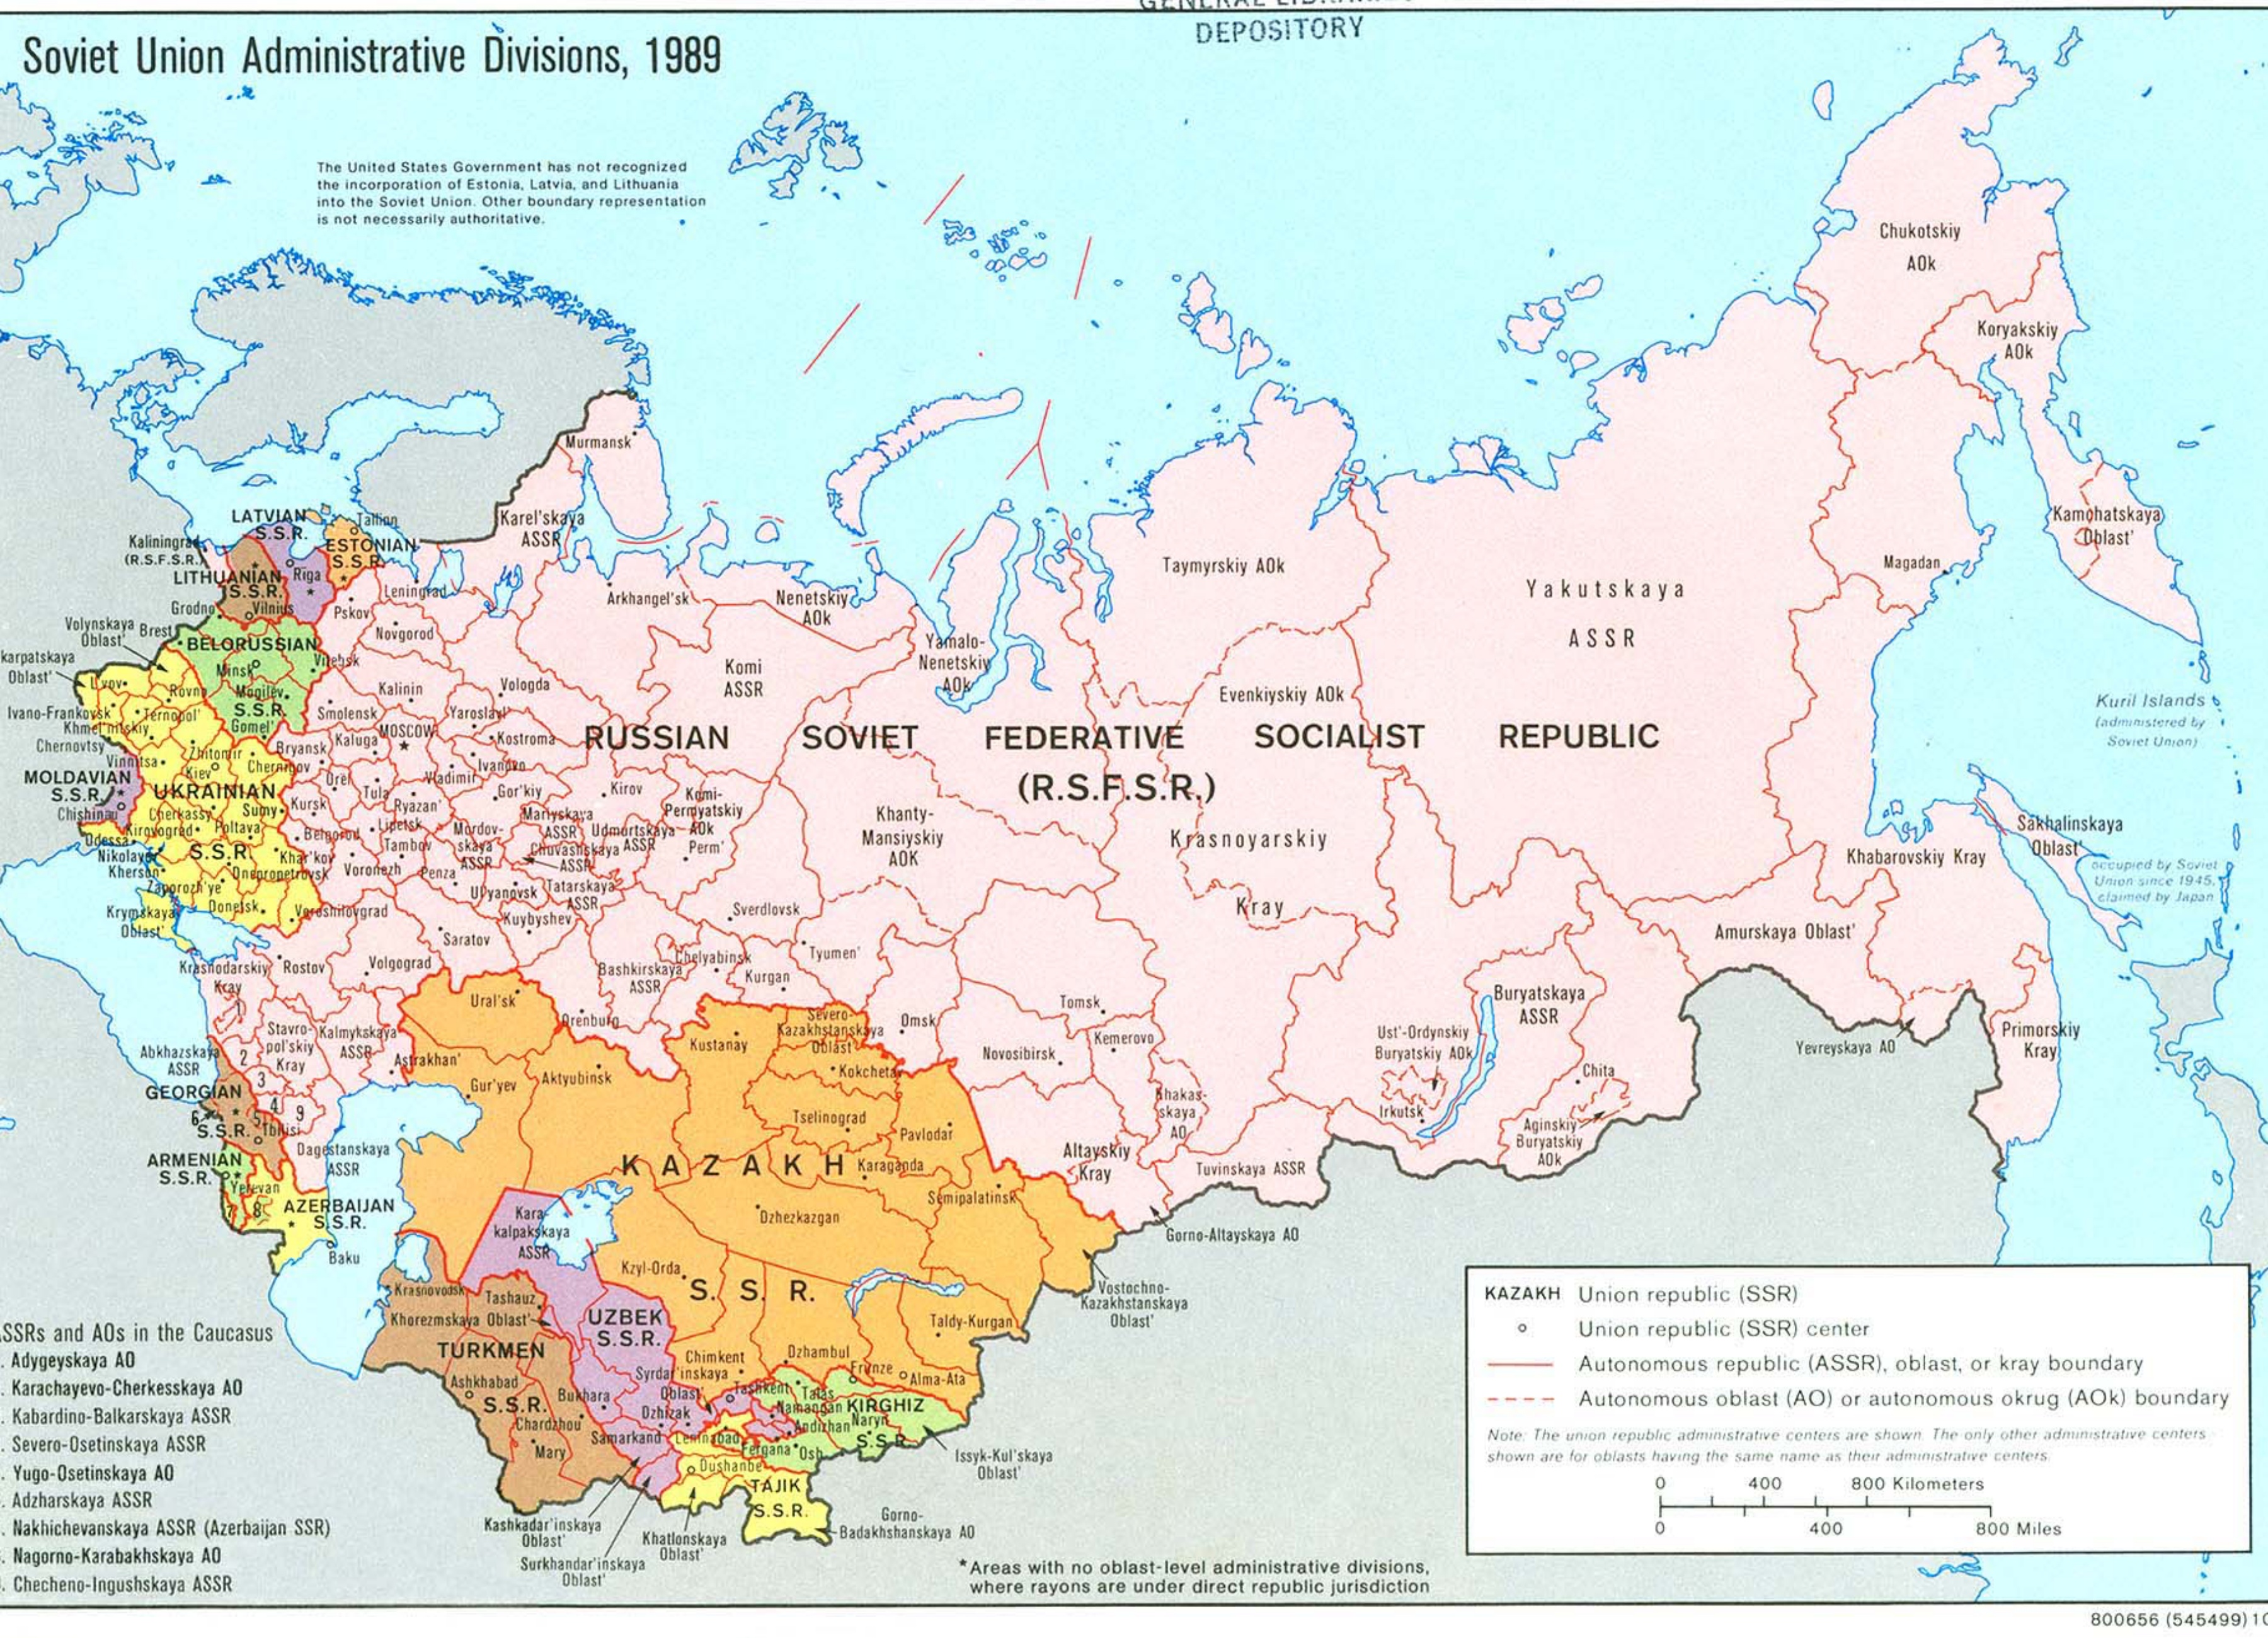 Bản đồ đất nước Nga lớn nhất: Bạn có muốn xem bản đồ đất nước Nga lớn nhất không? Với kích thước lớn nhất thế giới, đất nước Nga có nhiều địa điểm thú vị để khám phá từ các thành phố lớn đến các khu vực thiên nhiên hoang sơ. Bạn sẽ không thể bỏ qua cơ hội để nghiên cứu bản đồ này!